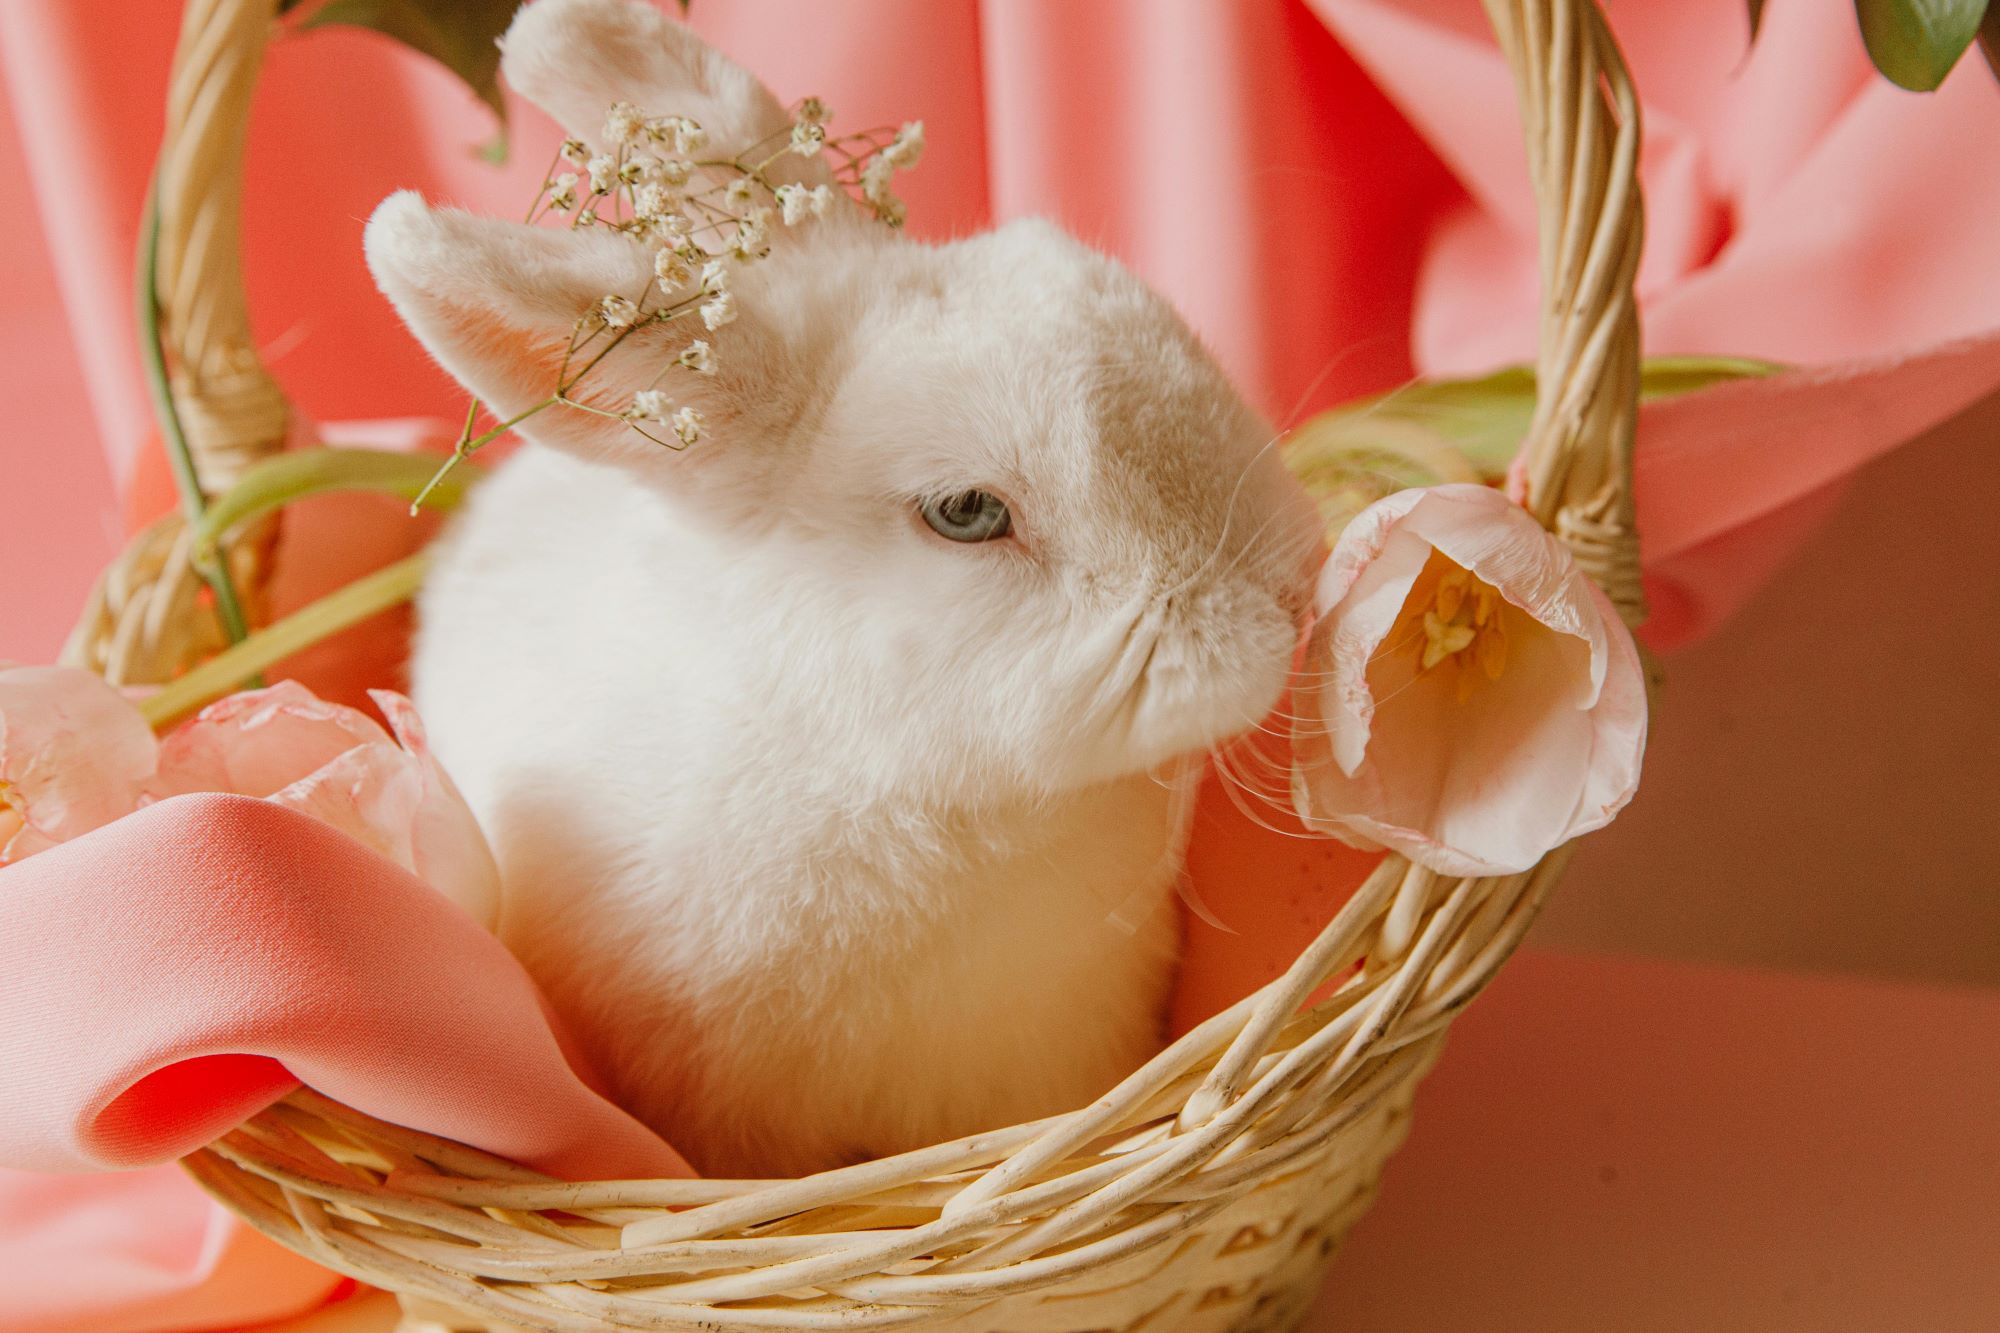 Easter bunny, czyli zajączej wielkanocny, to tradycyjny symbol świąt wielkanocnych od XIX wieku.